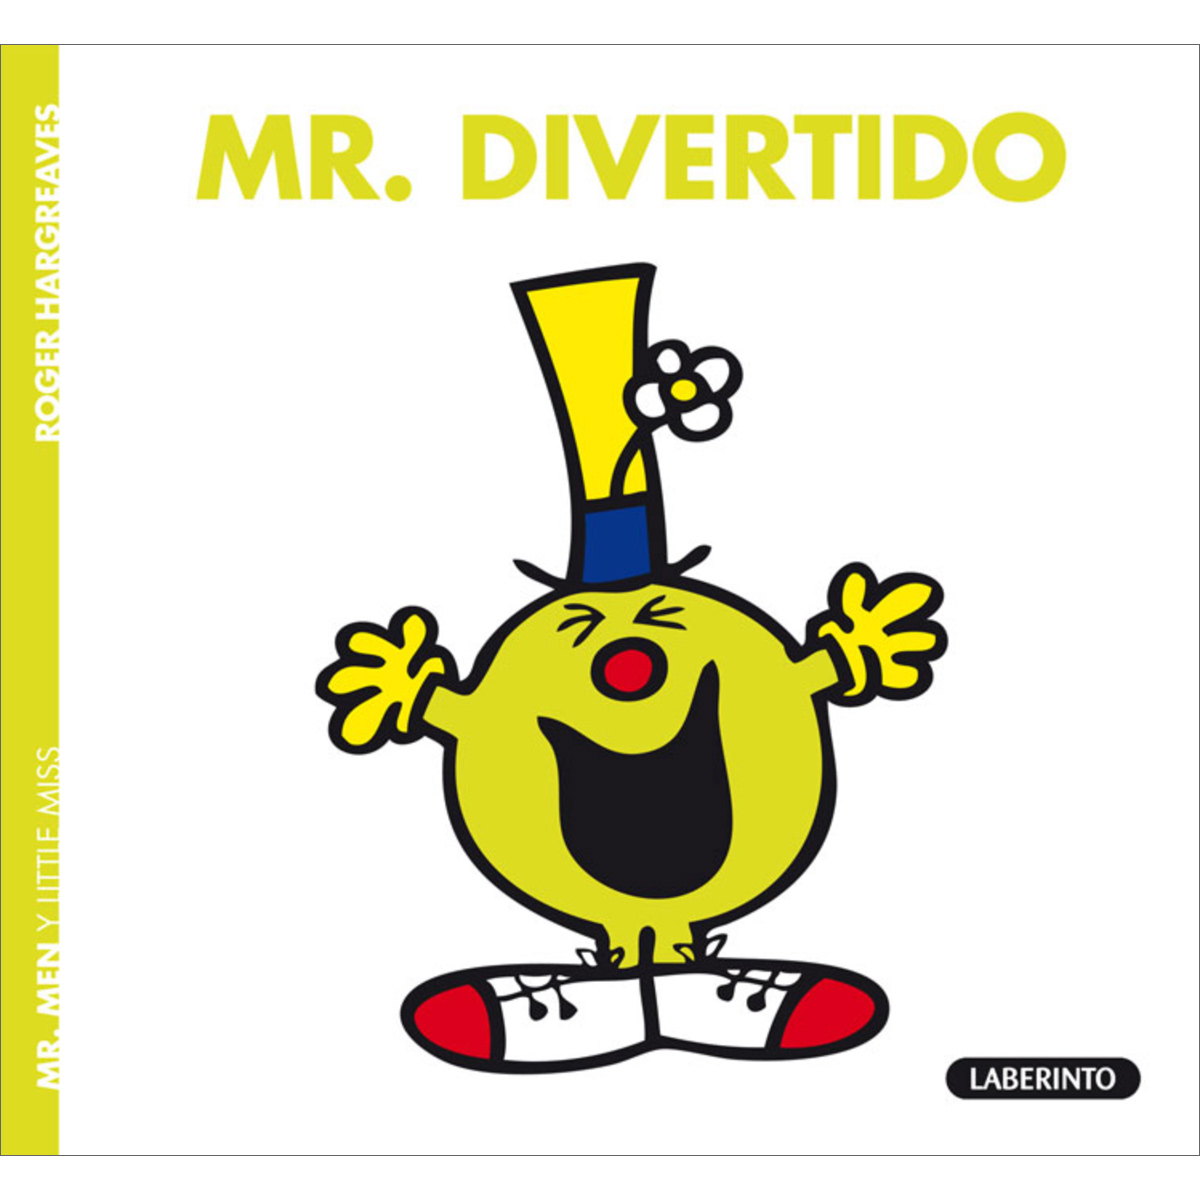 Mr. Divertido